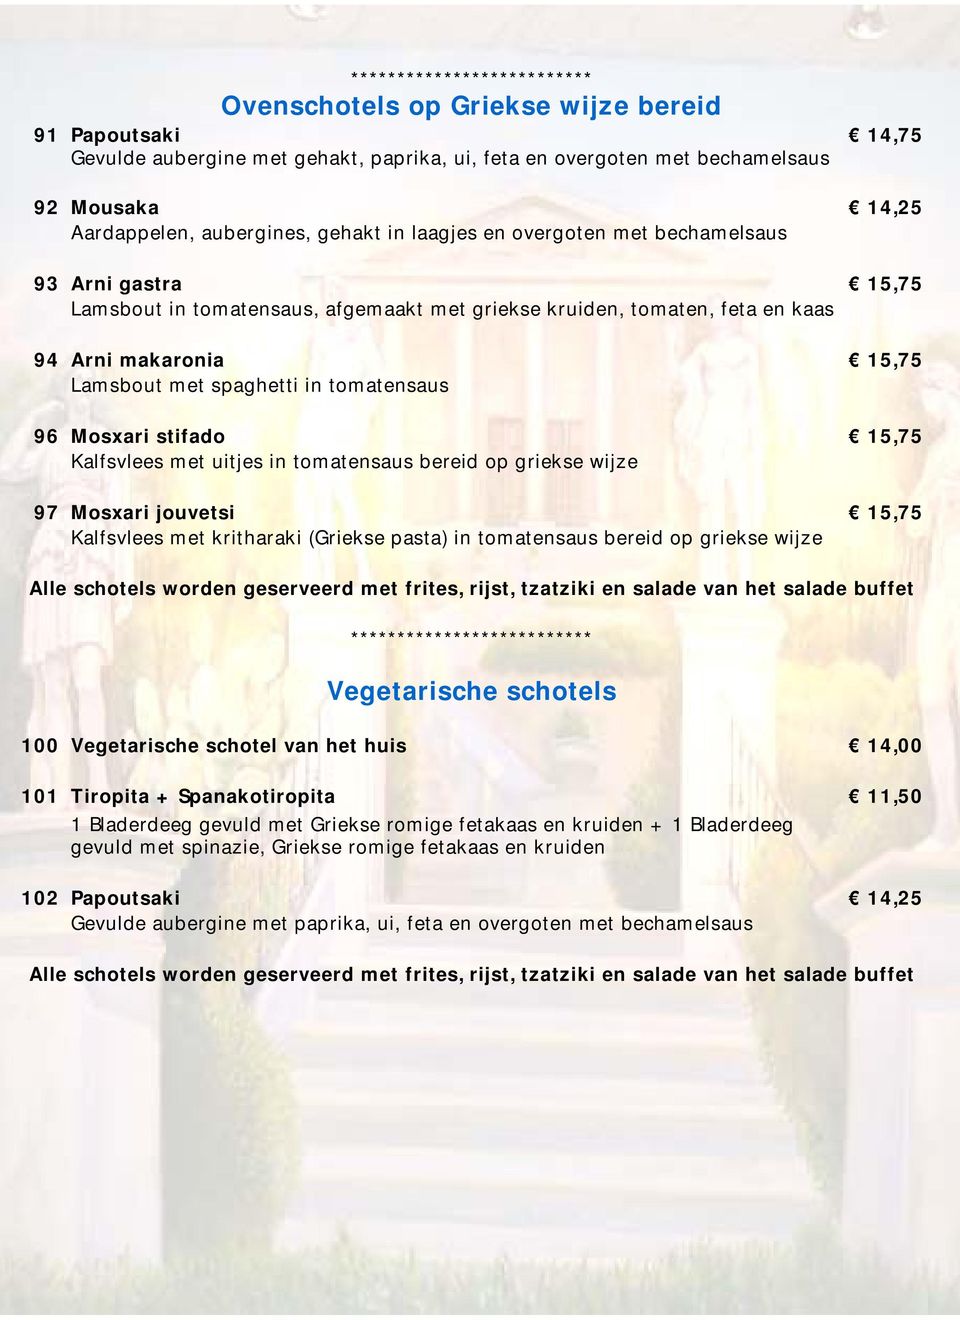 stifado 15,75 Kalfsvlees met uitjes in tomatensaus bereid op griekse wijze 97 Mosxari jouvetsi 15,75 Kalfsvlees met kritharaki (Griekse pasta) in tomatensaus bereid op griekse wijze